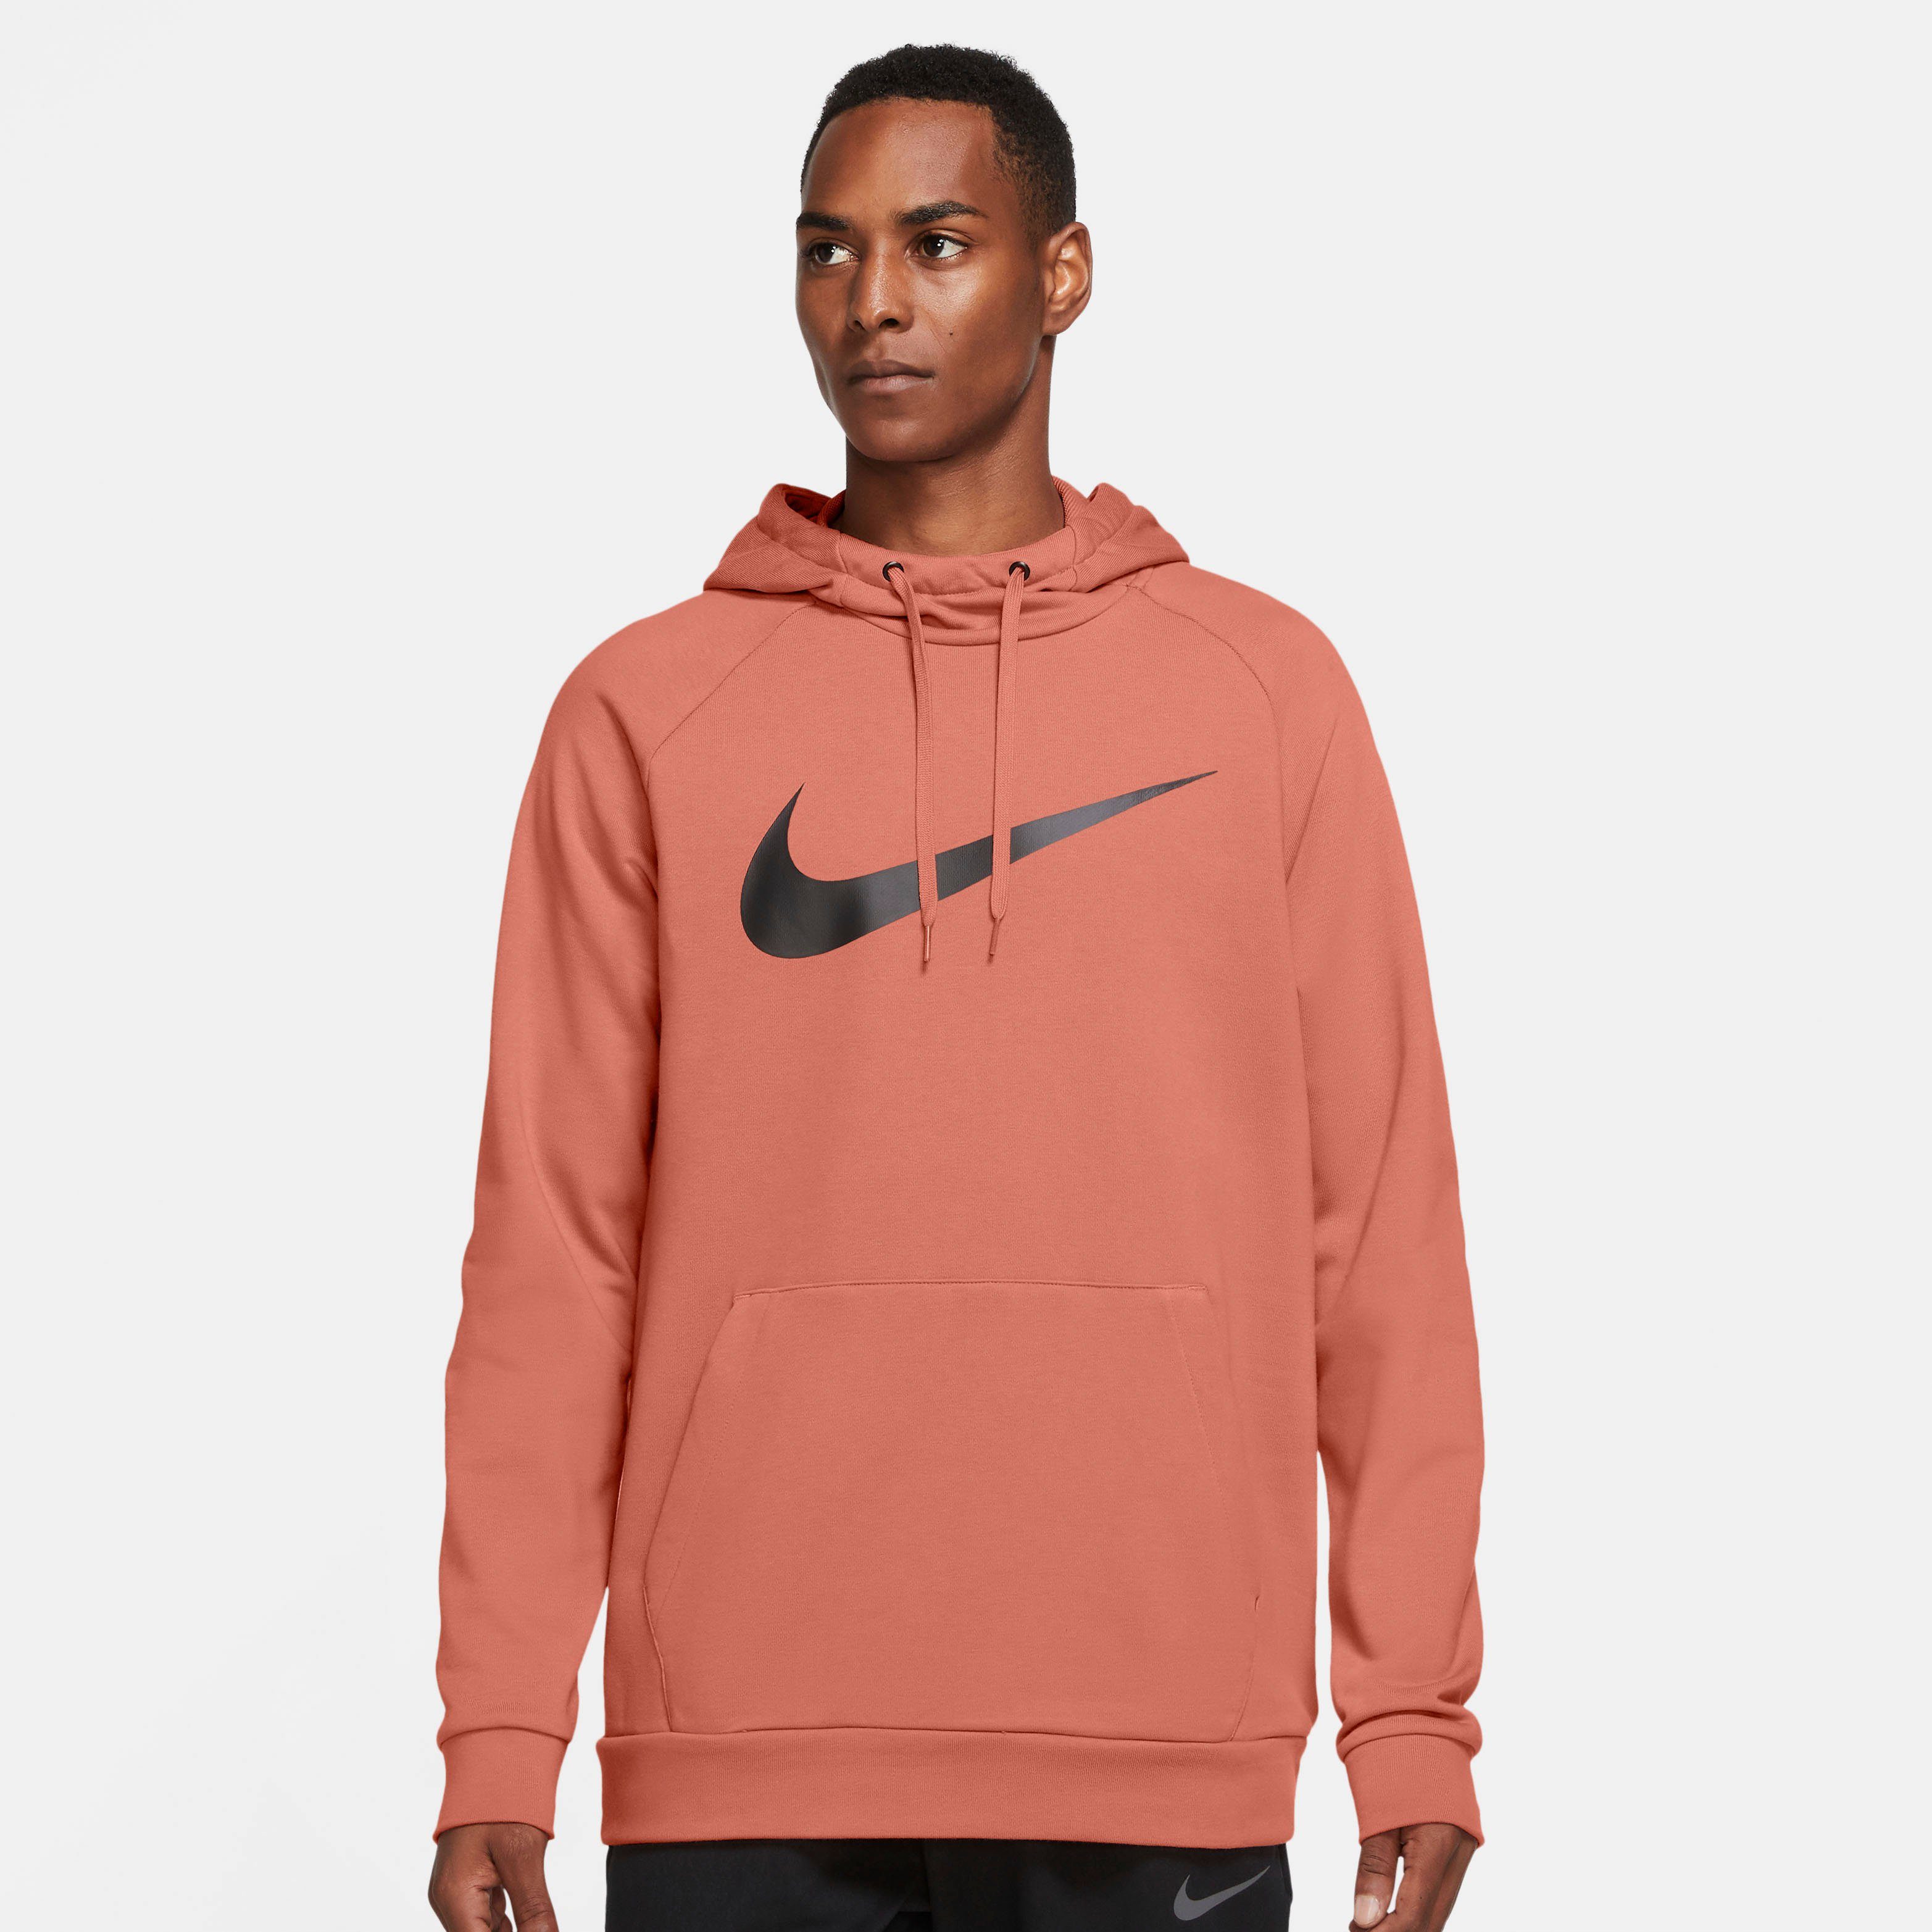 Nike Herren Hoodies online kaufen » Herren Kapuzenpullover | OTTO